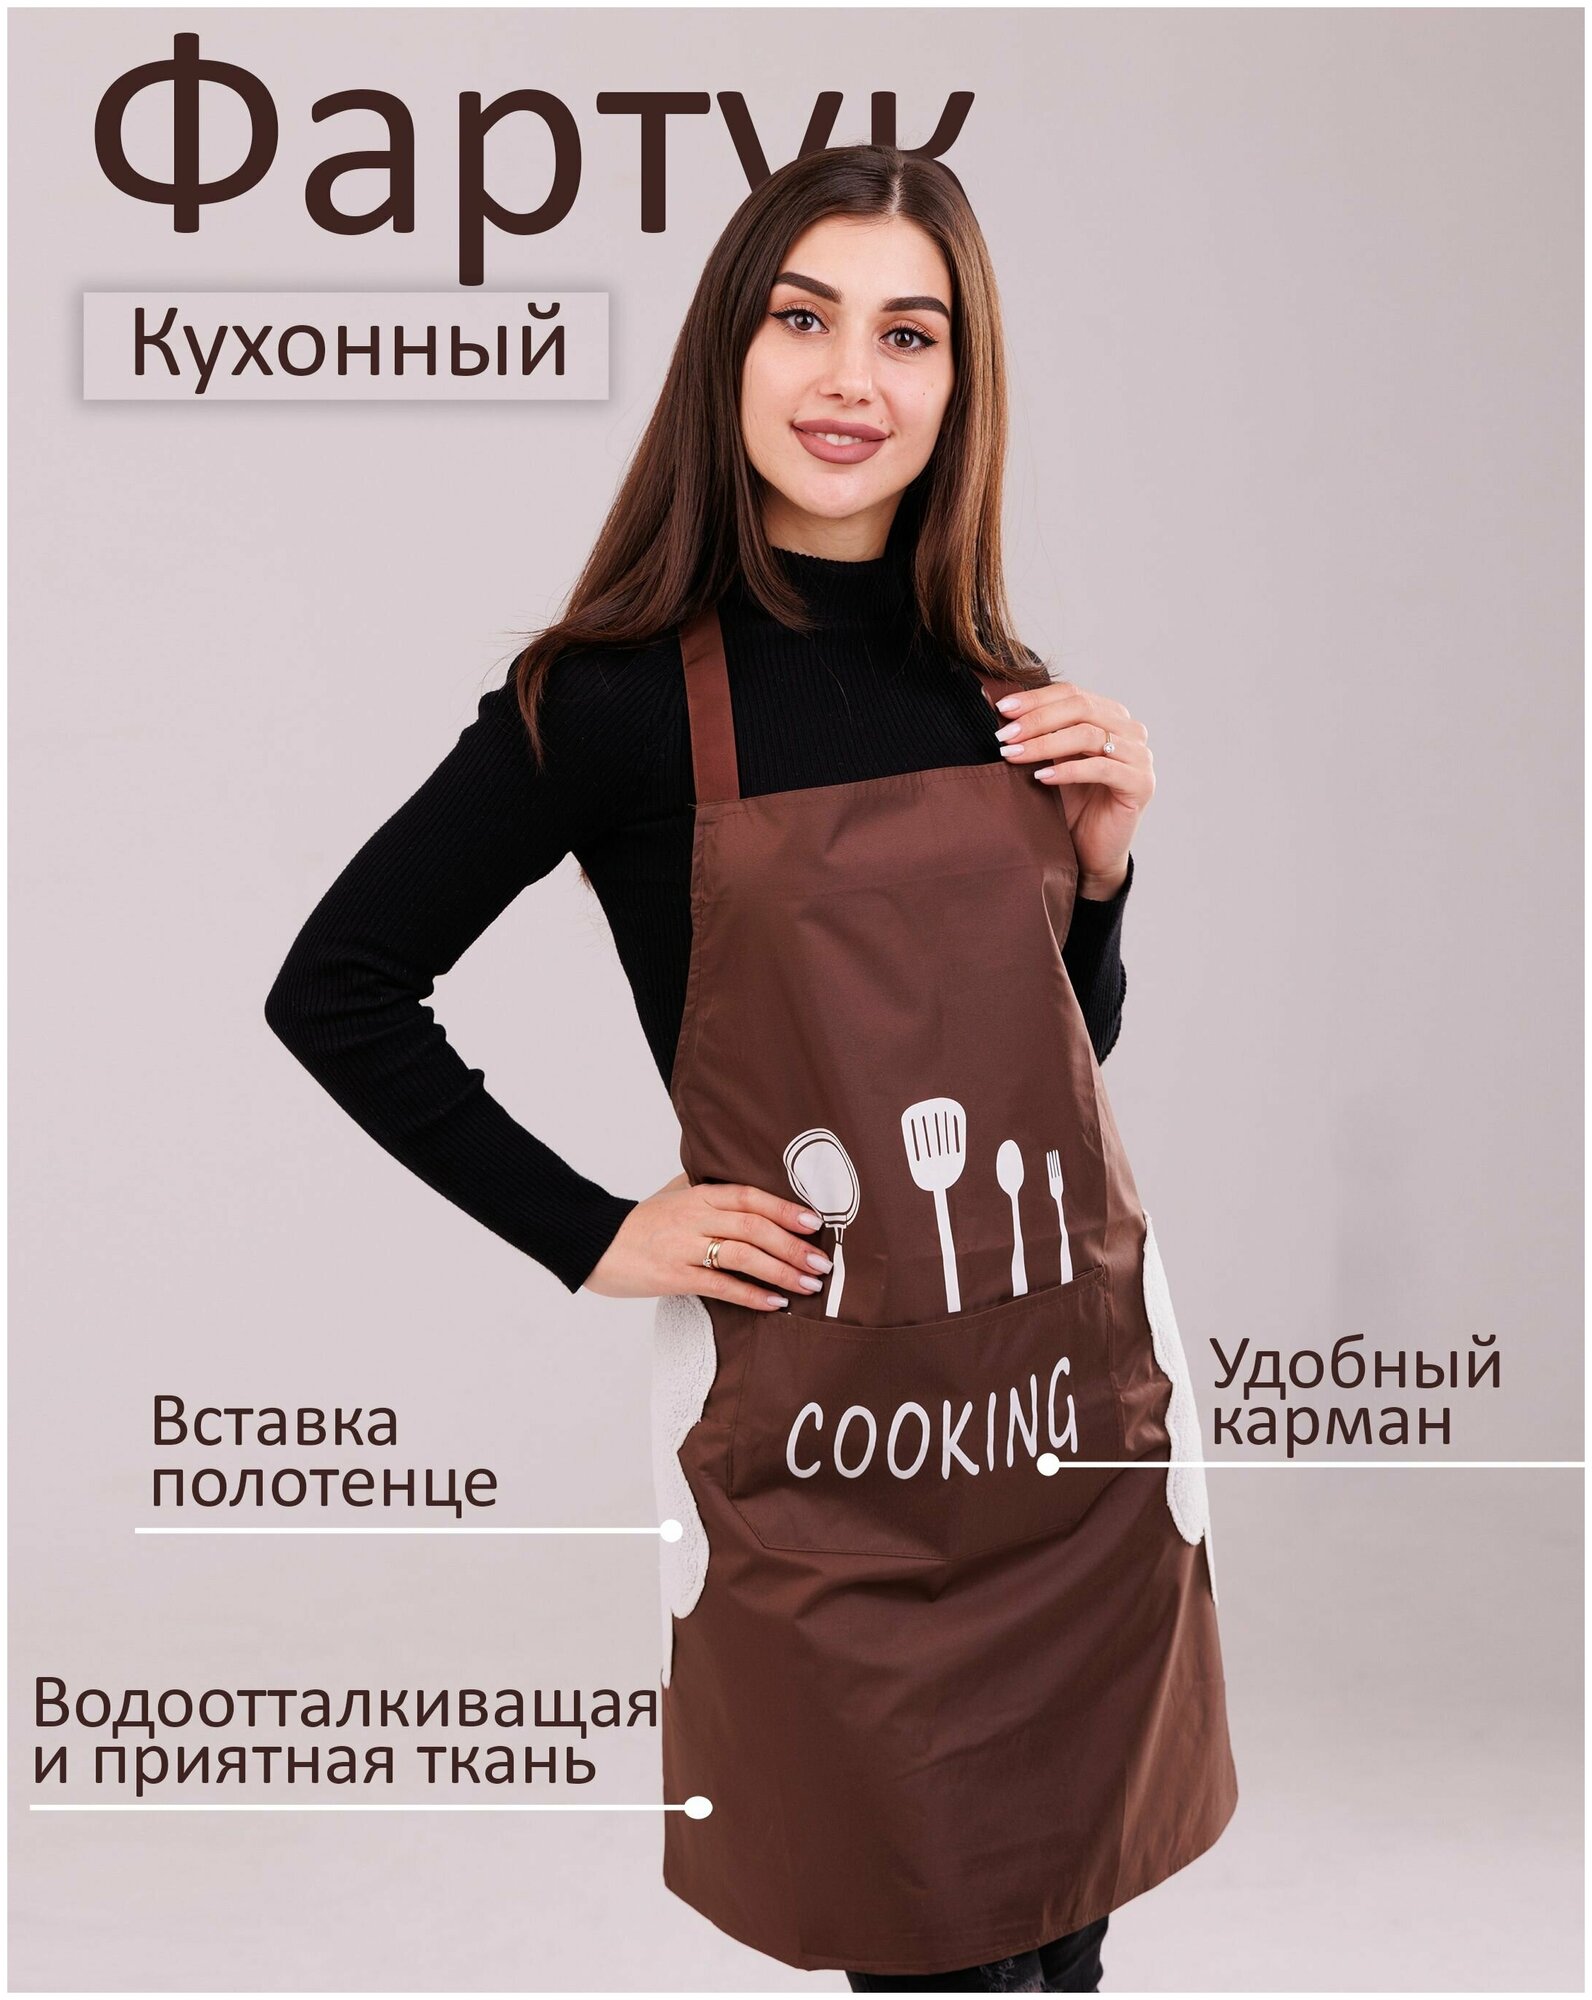 Фартук кухонный женский водонепроницаемый с карманом, передник поварской для мужчин и женщин водоотталкивающий, поварская одежда, рабочий, для кухни